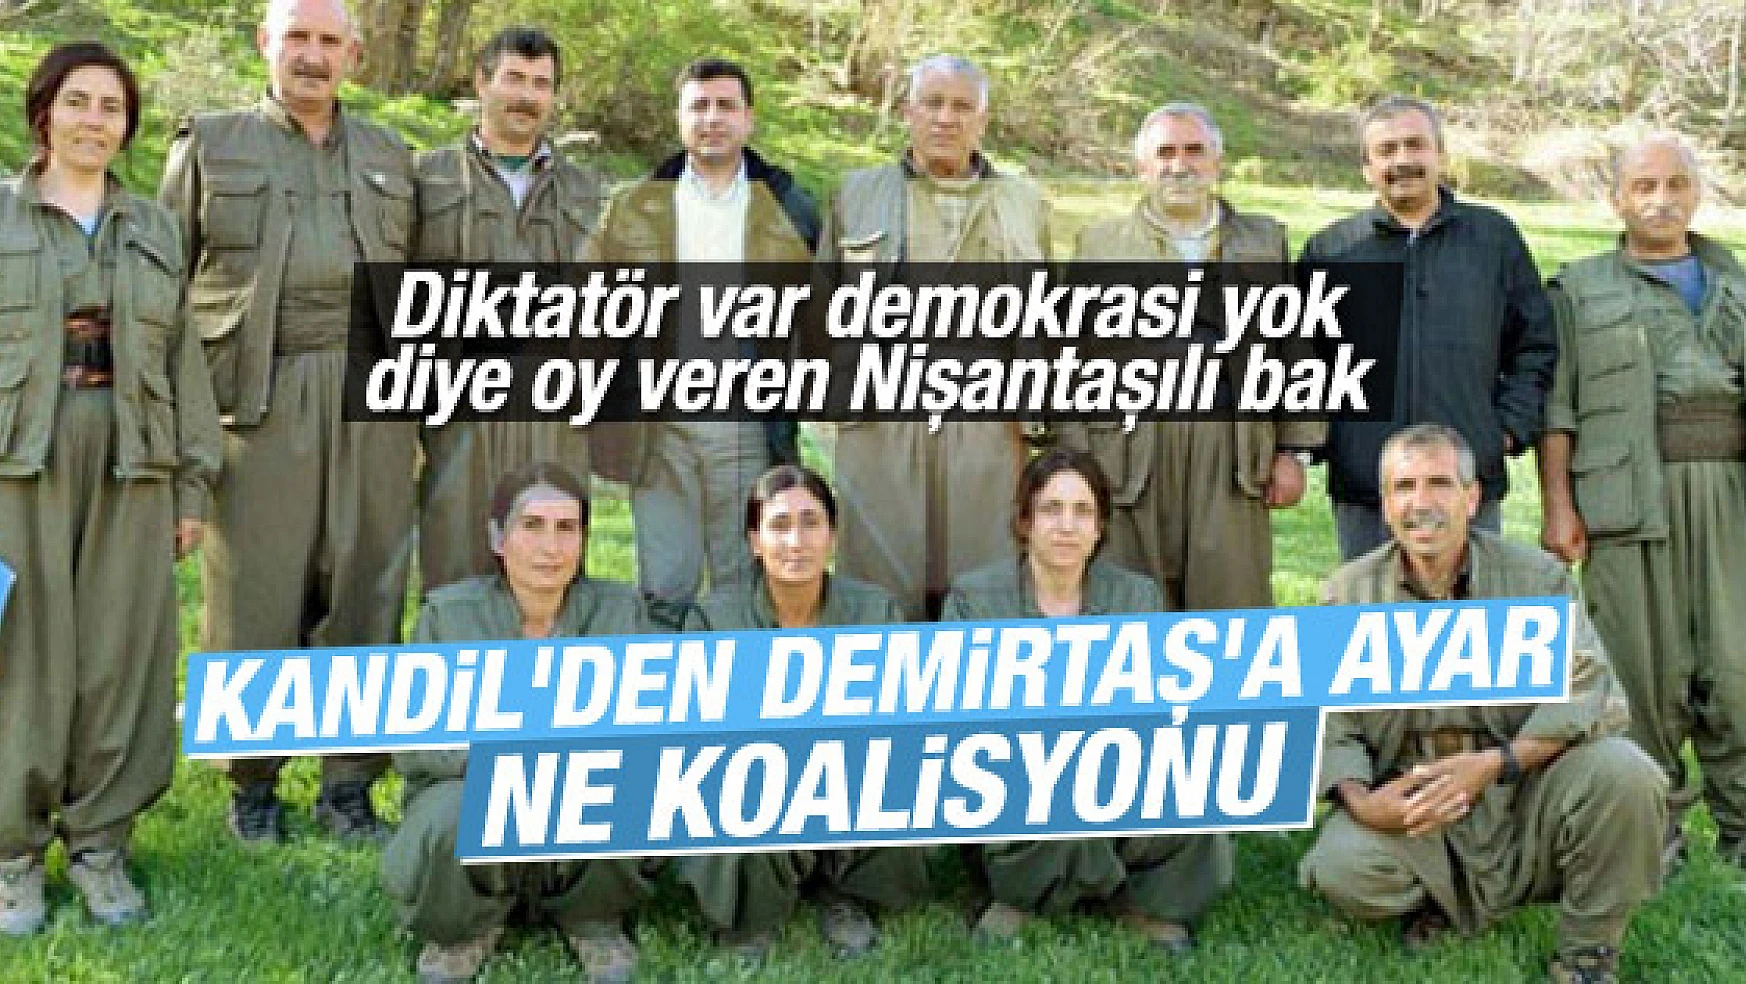 PKK'lı Duran Kalkan HDP koalisyona giremez dedi